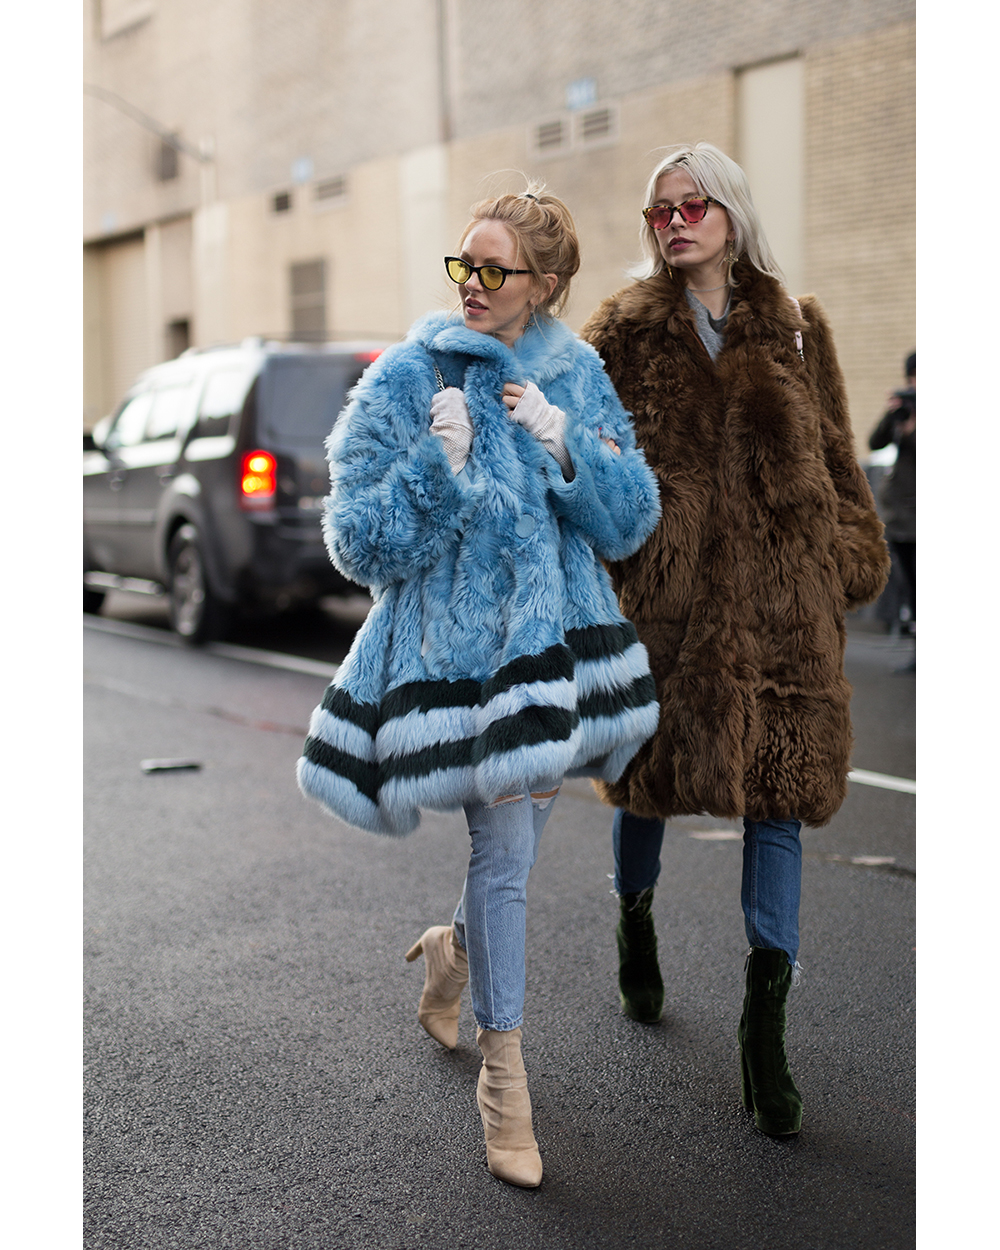 THE BEIGE SOCK: Caroline Vreeland and Shea Marie at New York Fashion Week